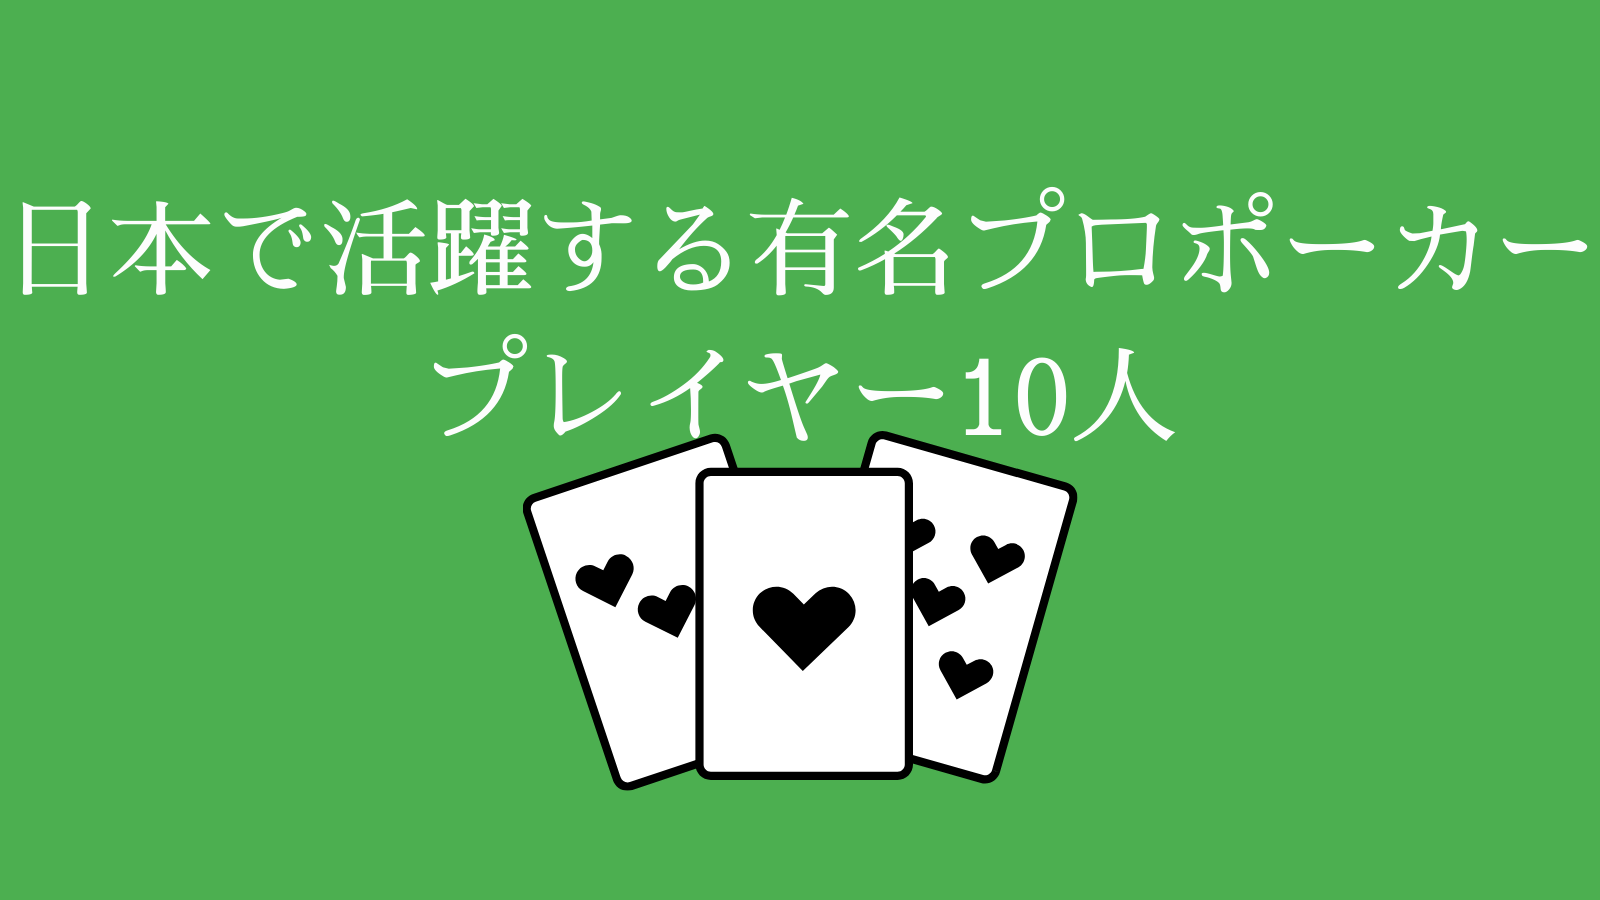 日本で活躍する有名プロポーカープレイヤー10人